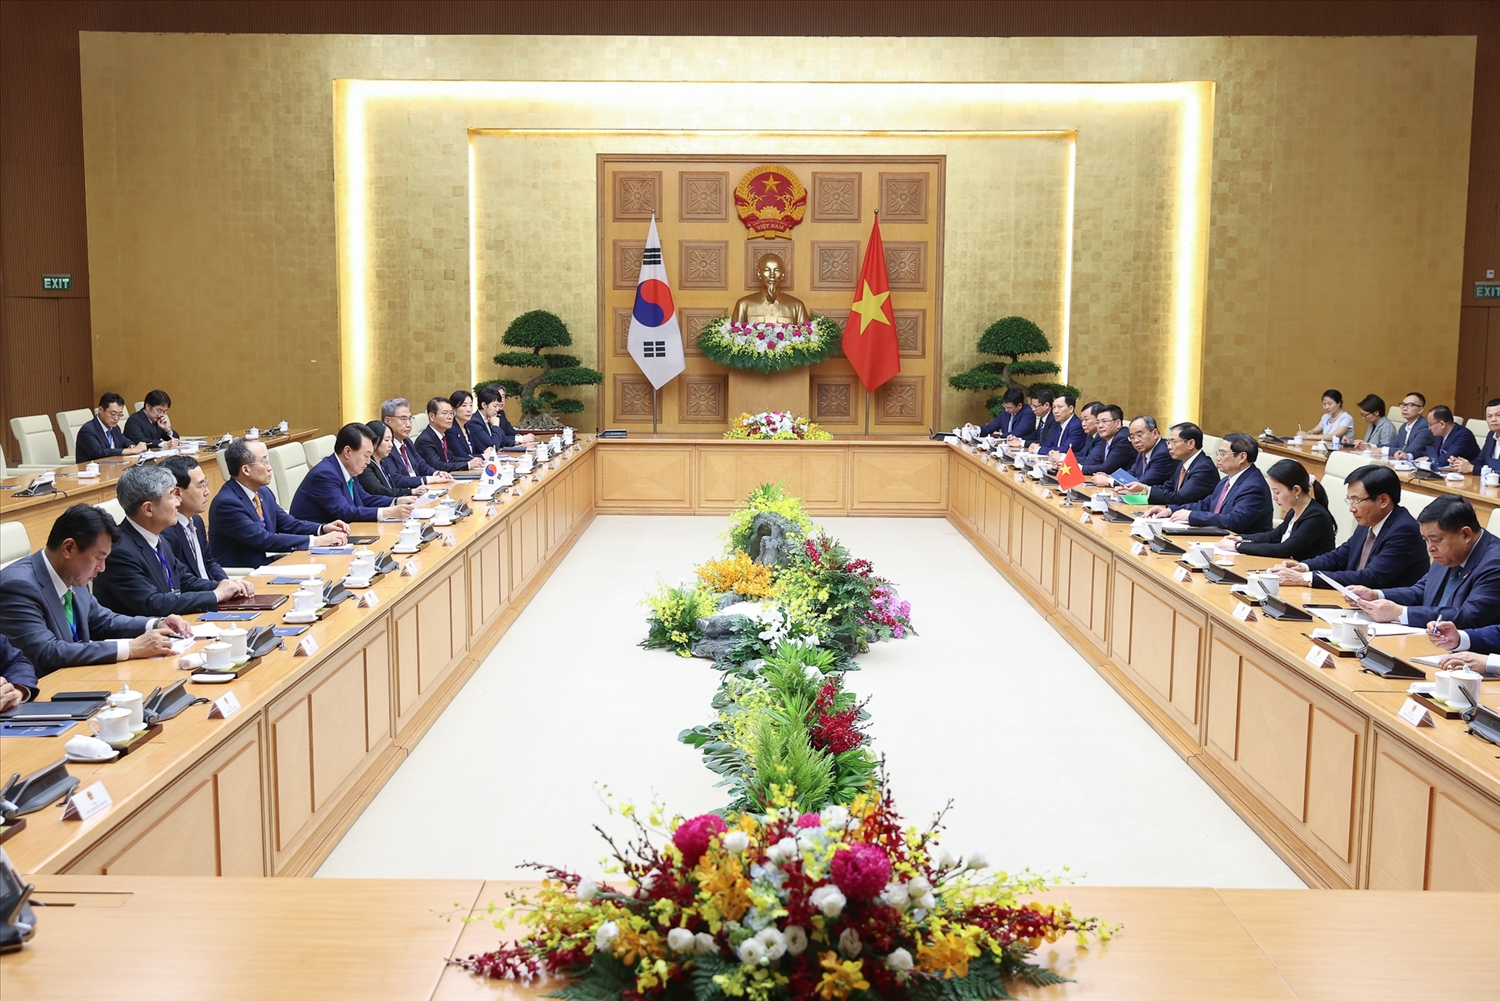 Tổng thống Yoon Suk Yeol khẳng định, Chính phủ Hàn Quốc sẽ tiếp tục khuyến khích, tạo điều kiện cho doanh nghiệp Hàn Quốc đầu tư vào Việt Nam - Ảnh: VGP/Nhật Bắc